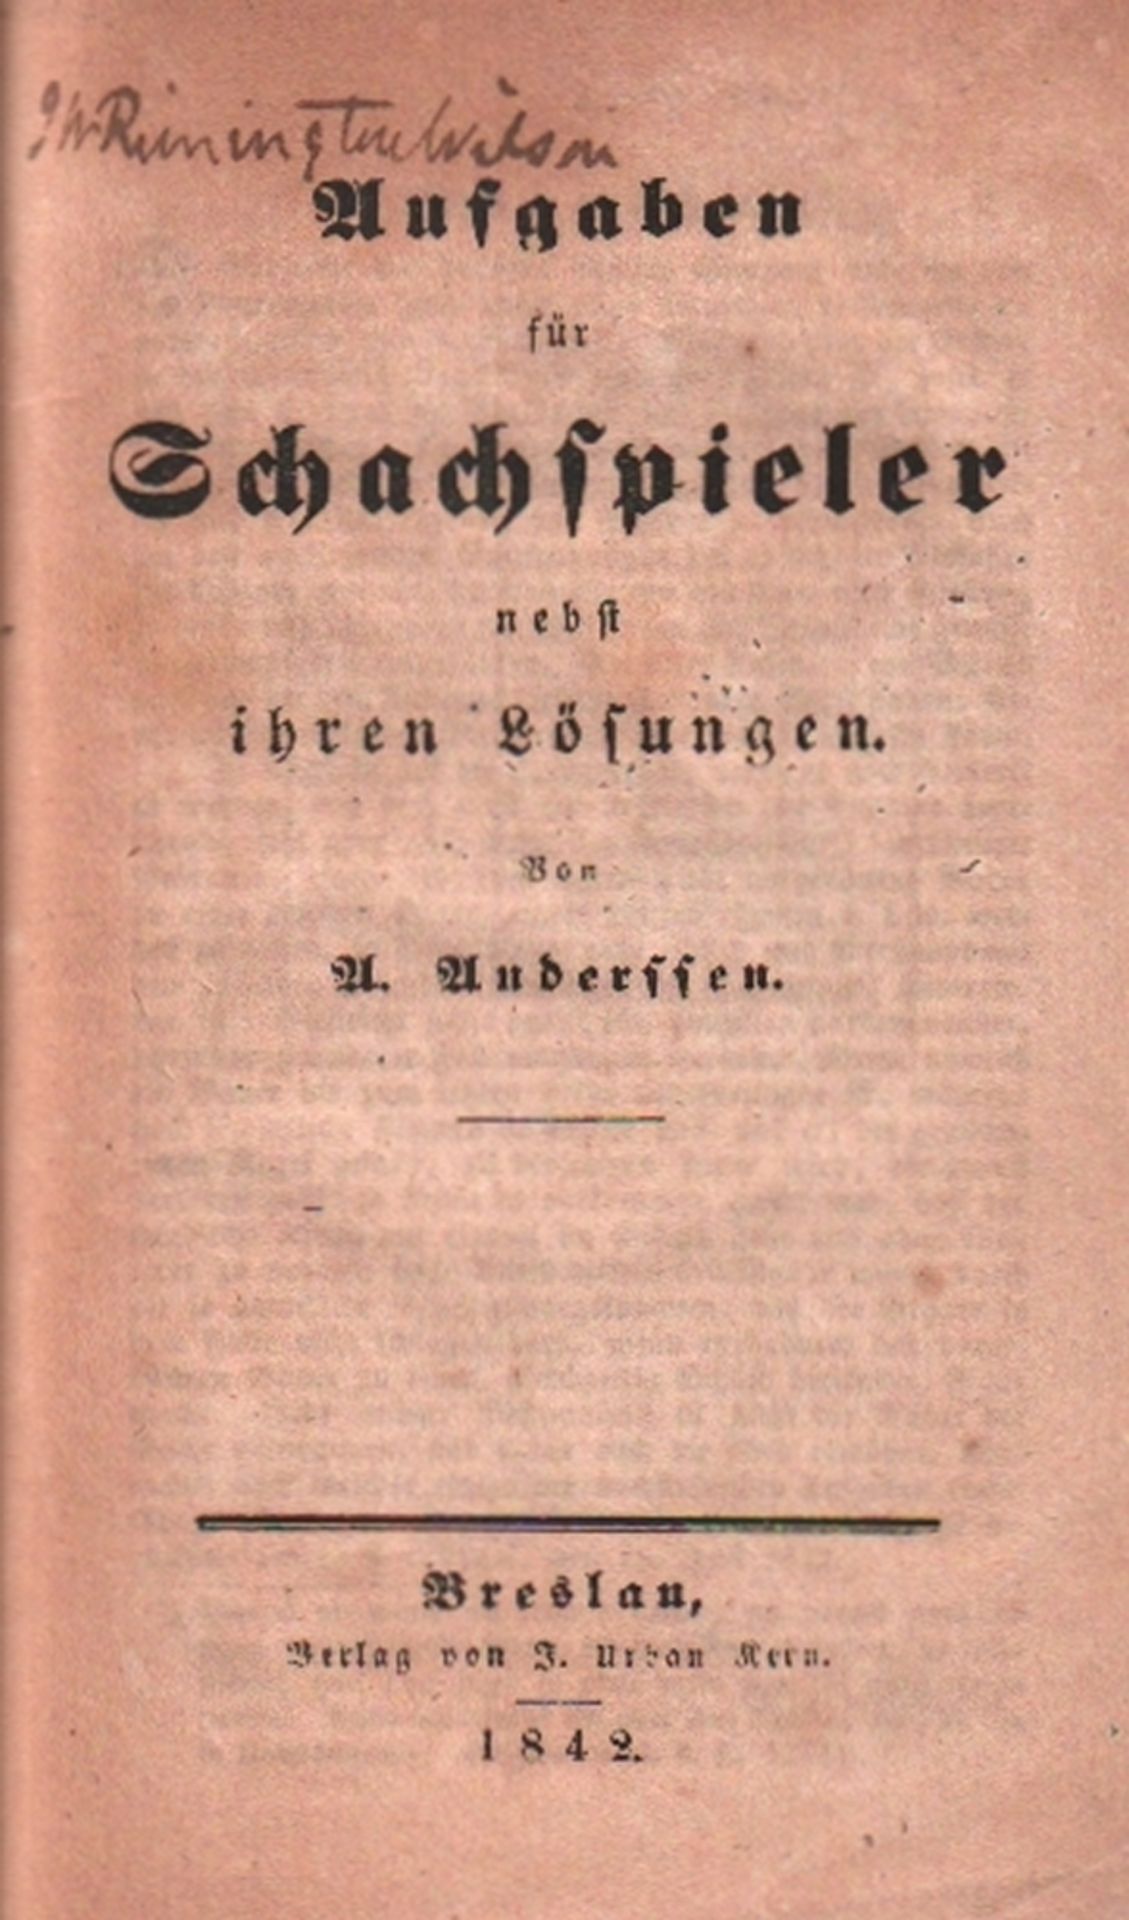 Anderssen, A(dolf). Aufgaben für Schachspieler nebst ihren Lösungen. Breslau, Kern, 1842. 8°. Mit